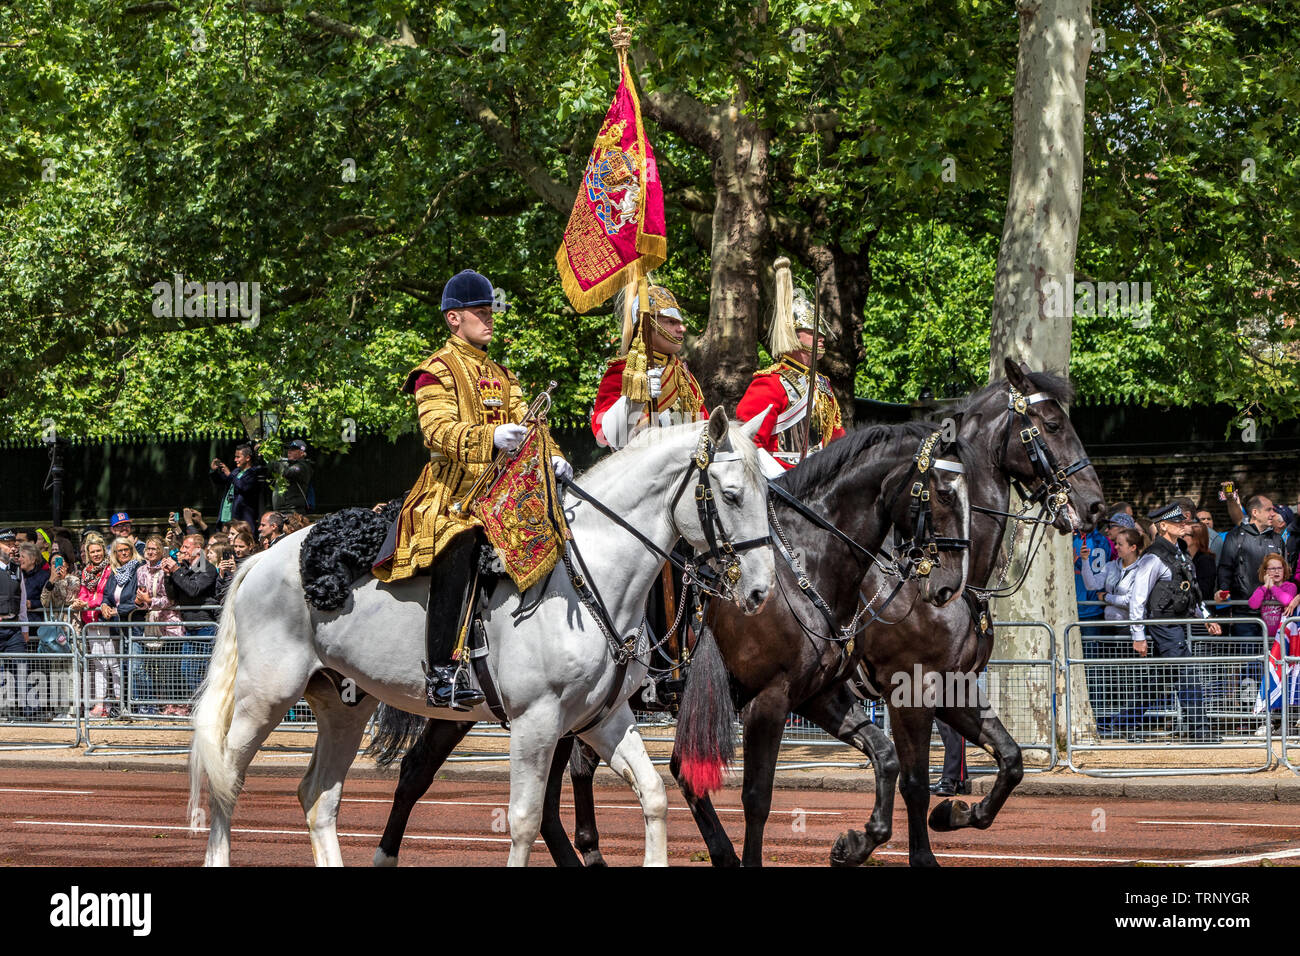 Life Guards of the Household Cavalry Mounted Regiment sur l'équitation le long du Mall à Trooping the Color cérémonie, Londres, Royaume-Uni, 2019 Banque D'Images